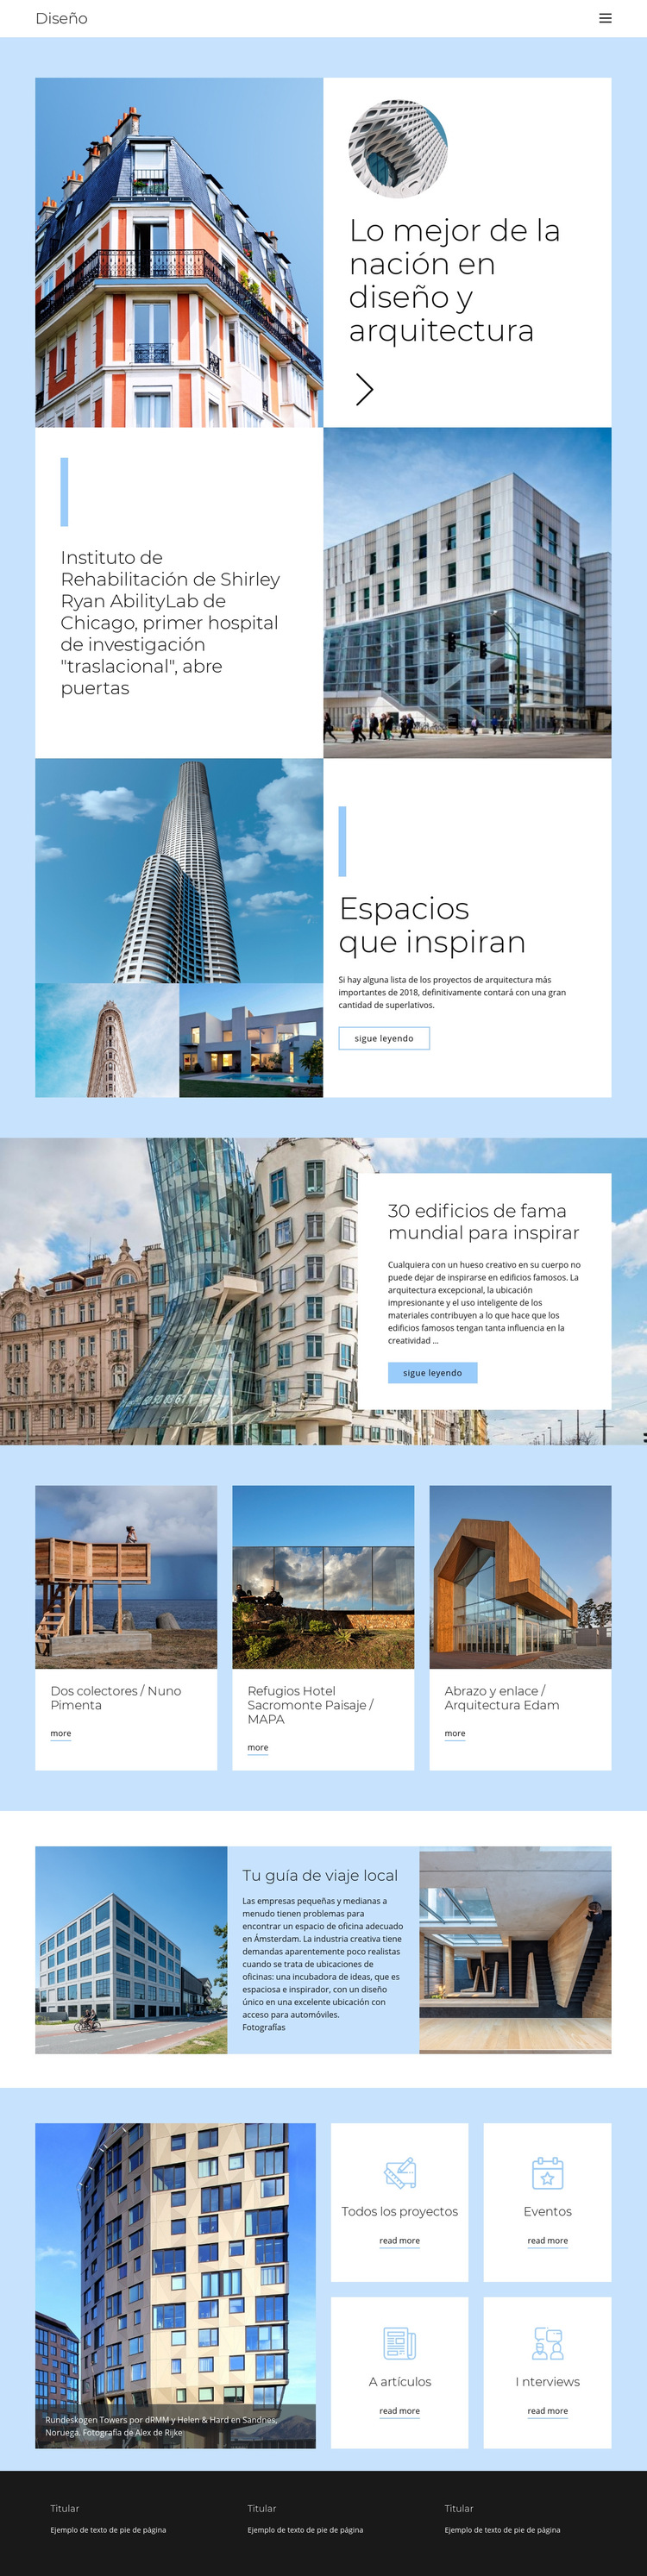 Guía de arquitectura de la ciudad Plantilla de sitio web